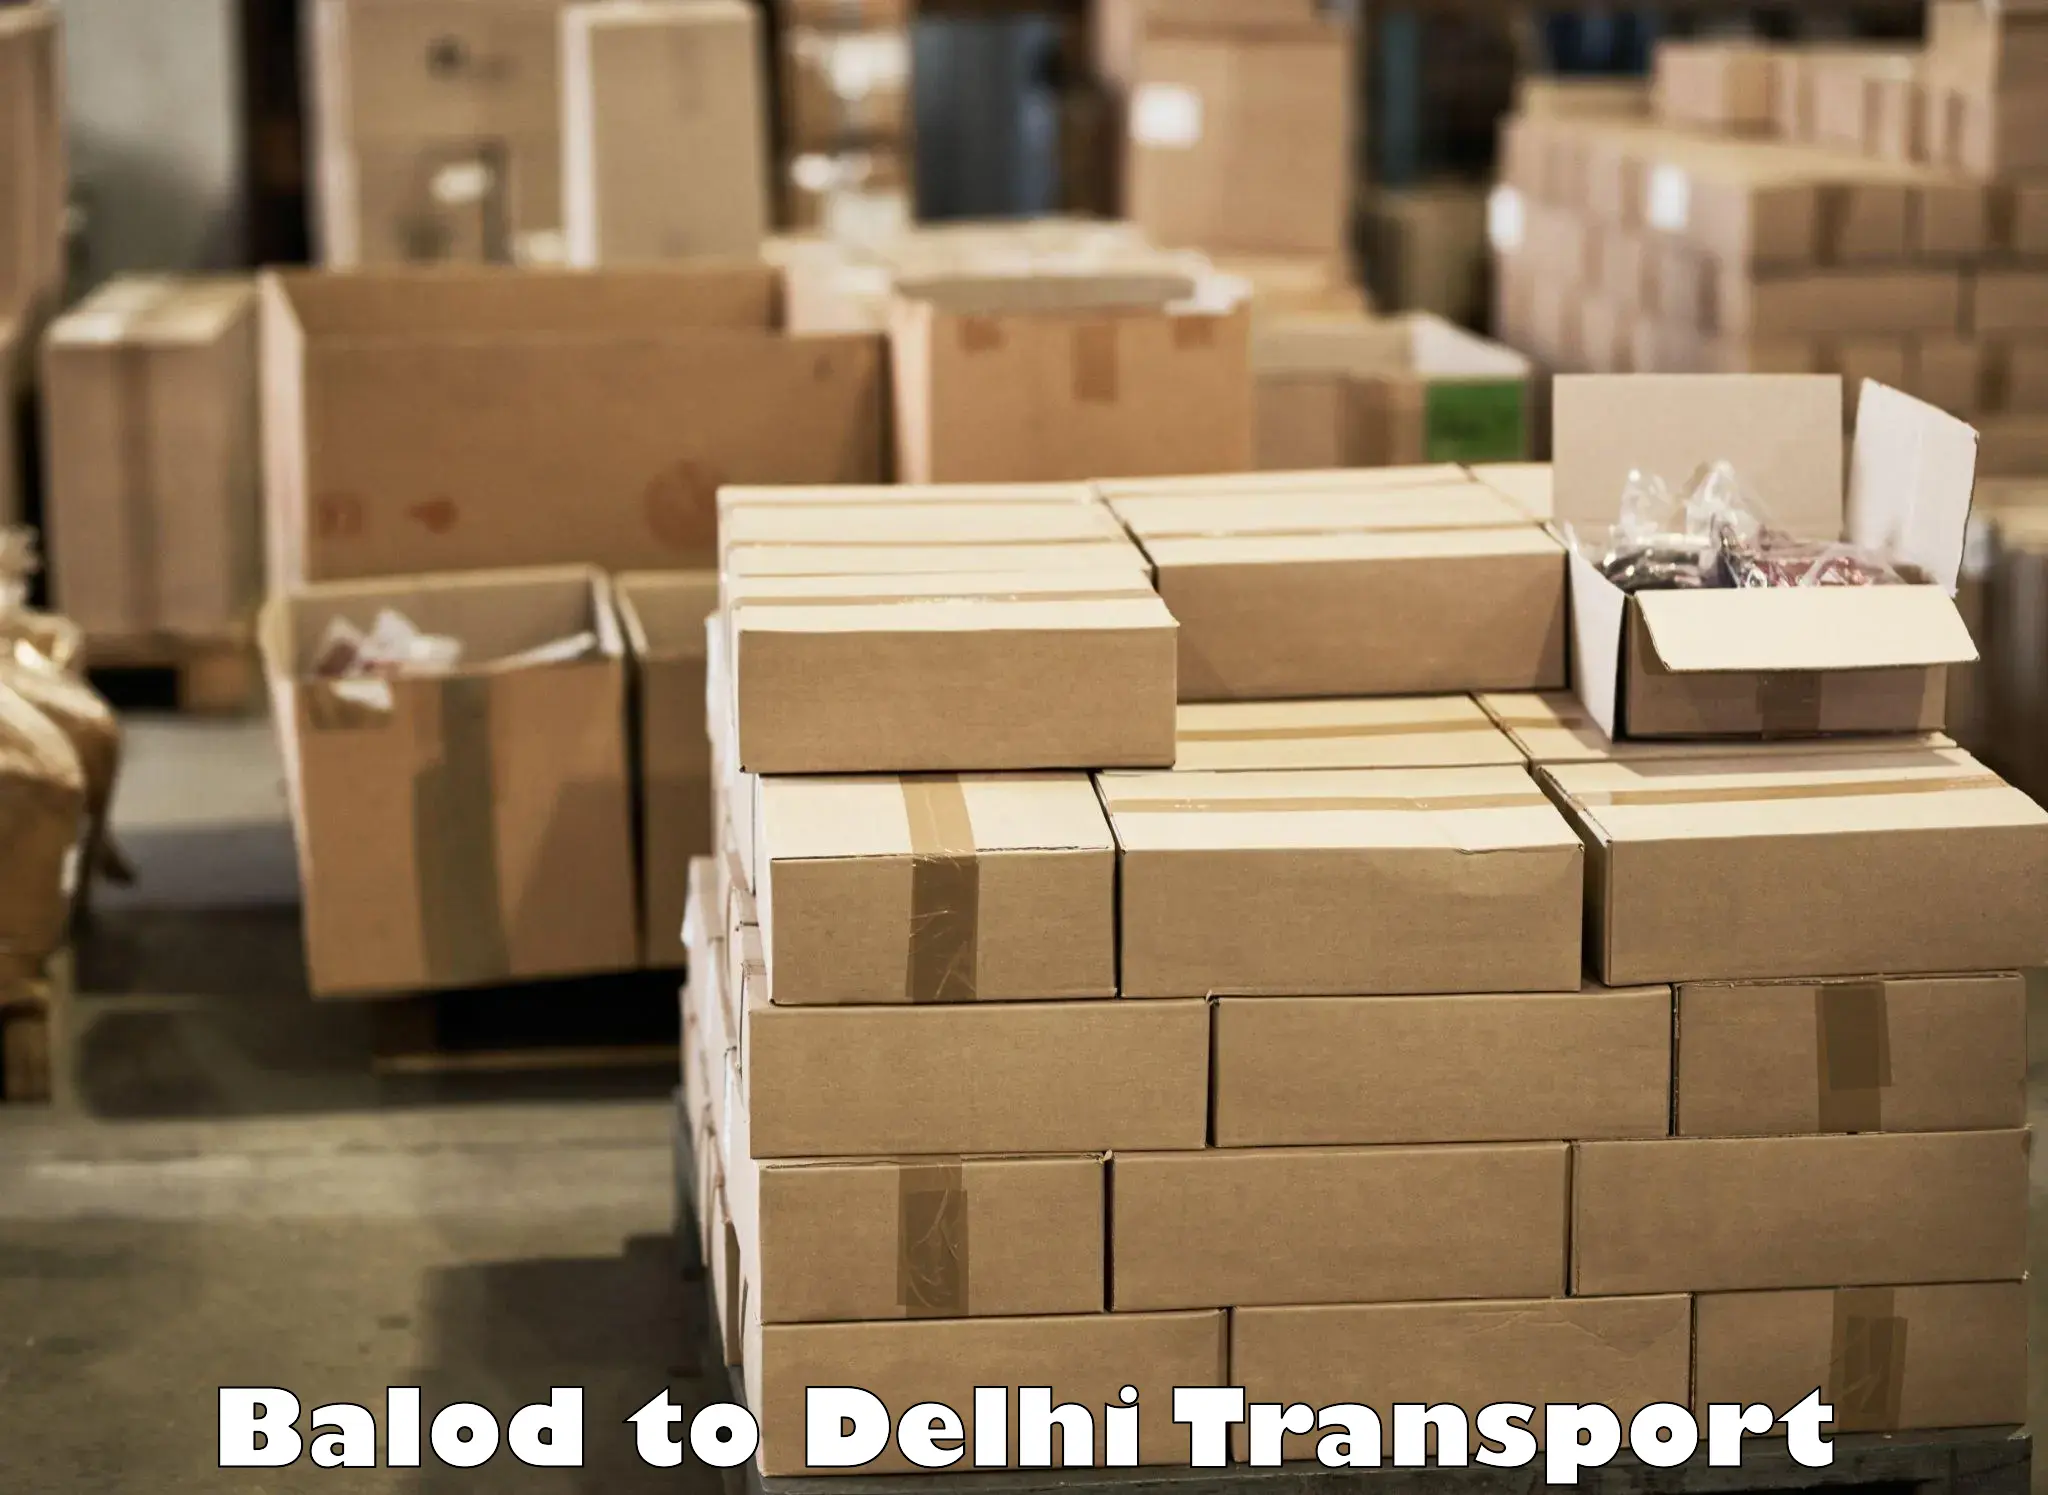 Online transport service Balod to NIT Delhi